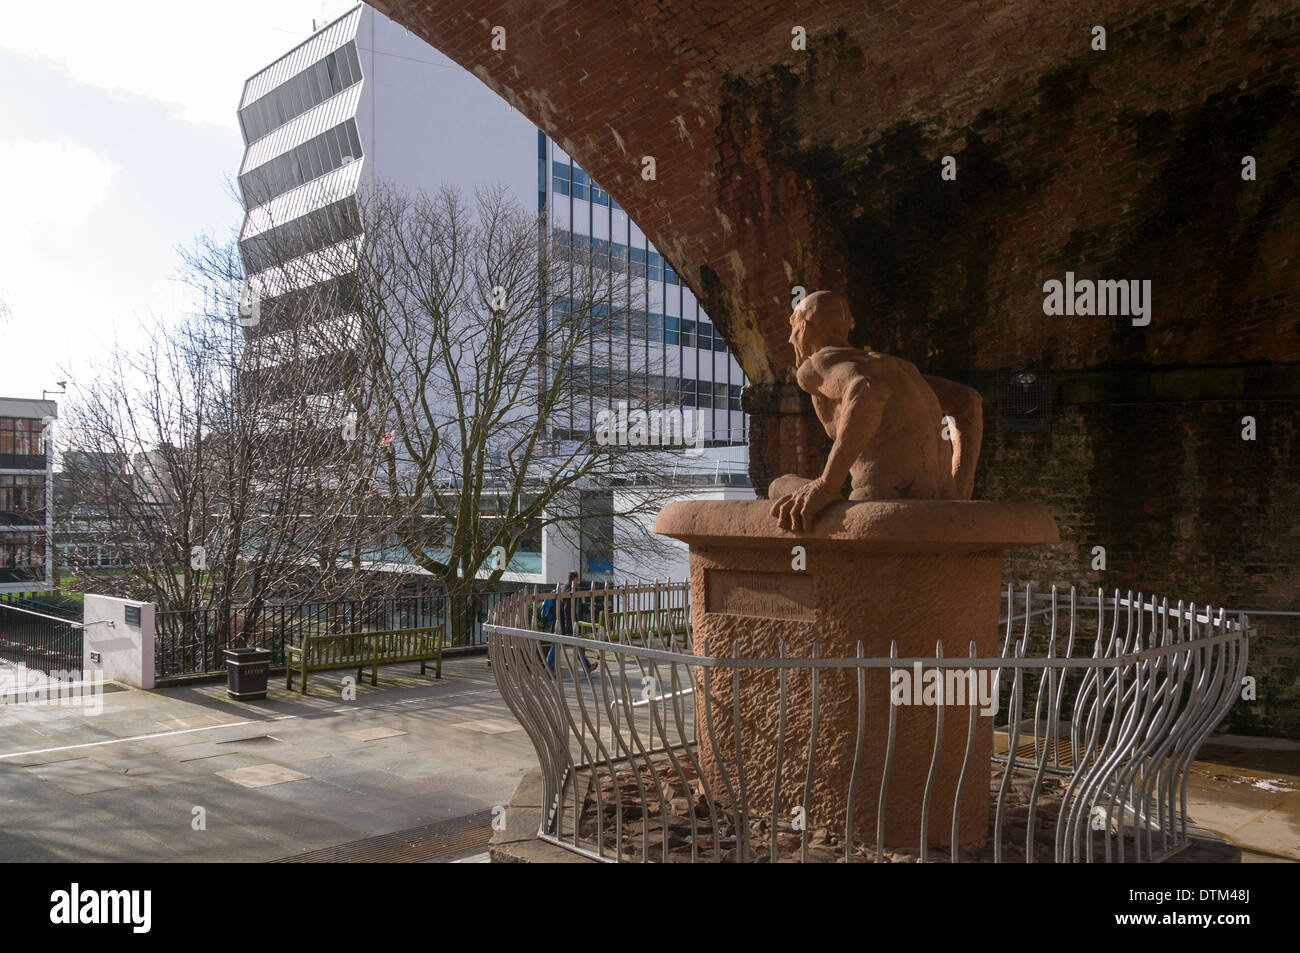 Archimède, une sculpture par Thompson W Dagnall, 1990. Manchester, Angleterre, Royaume-Uni. Renold bâtiment (Université de Manchester) derrière. Banque D'Images